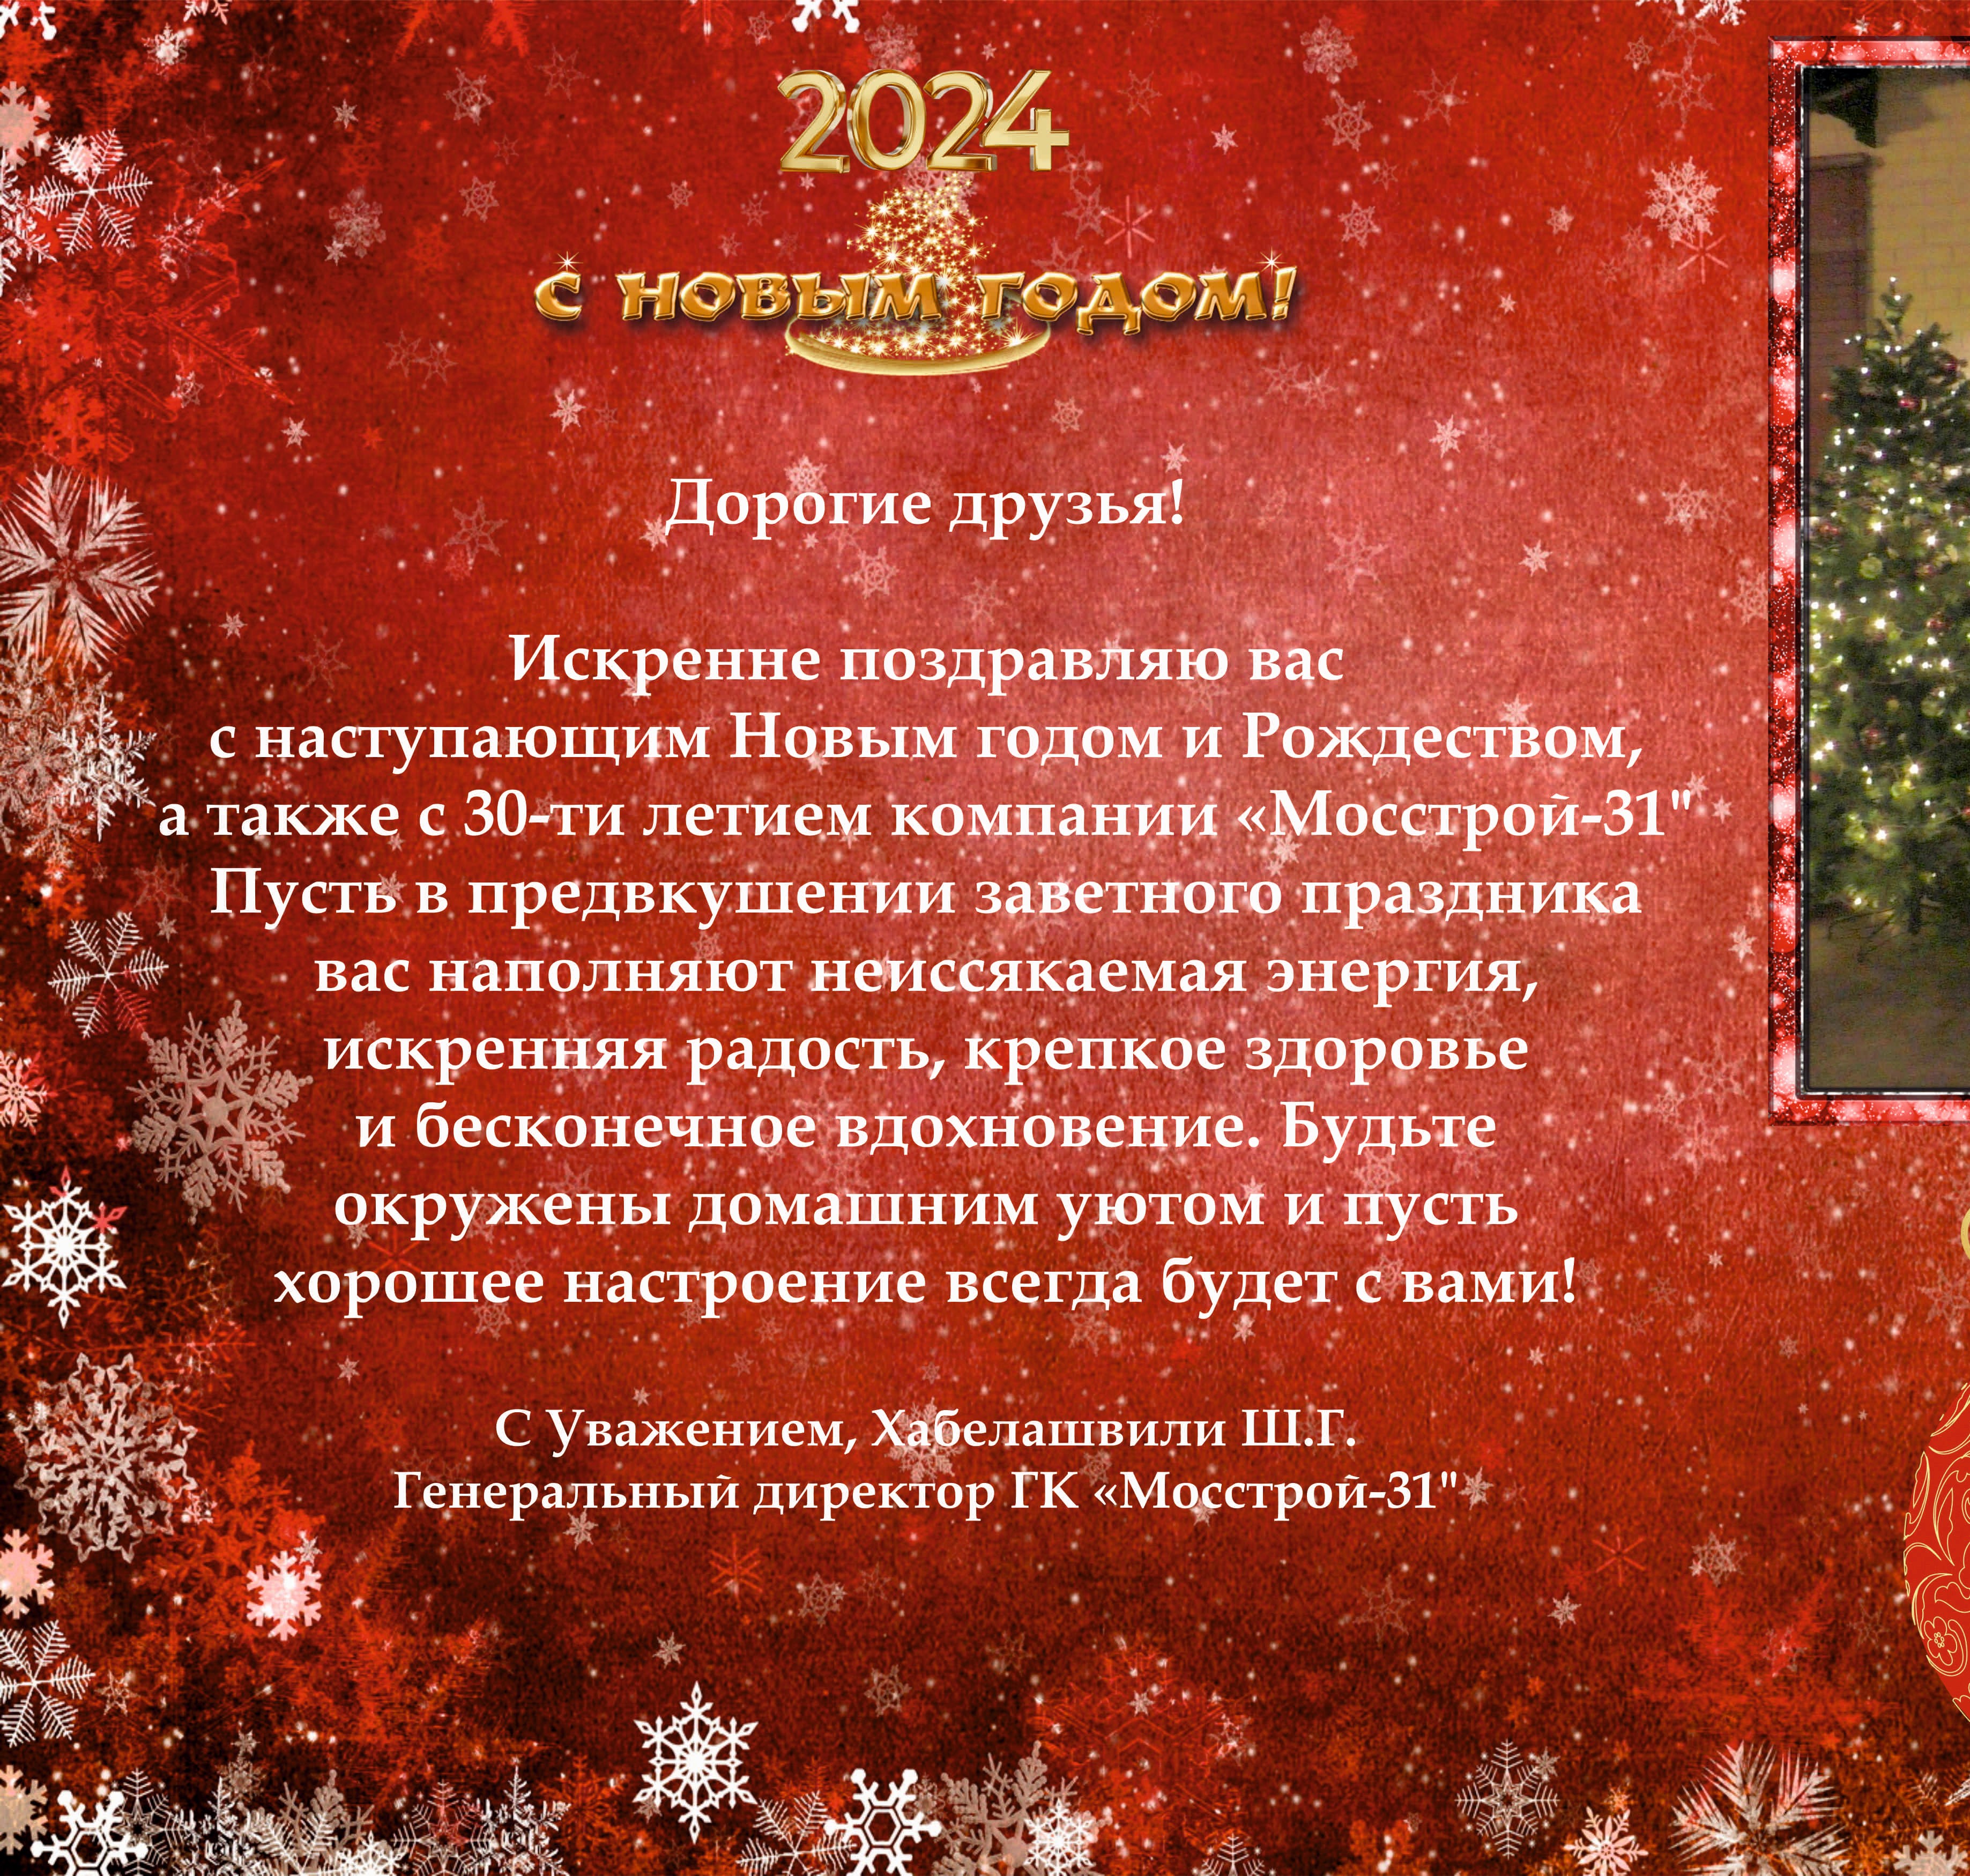 ГК «Мосстрой-31» поздравляет партнеров и коллег с Новым годом и Рождеством! 